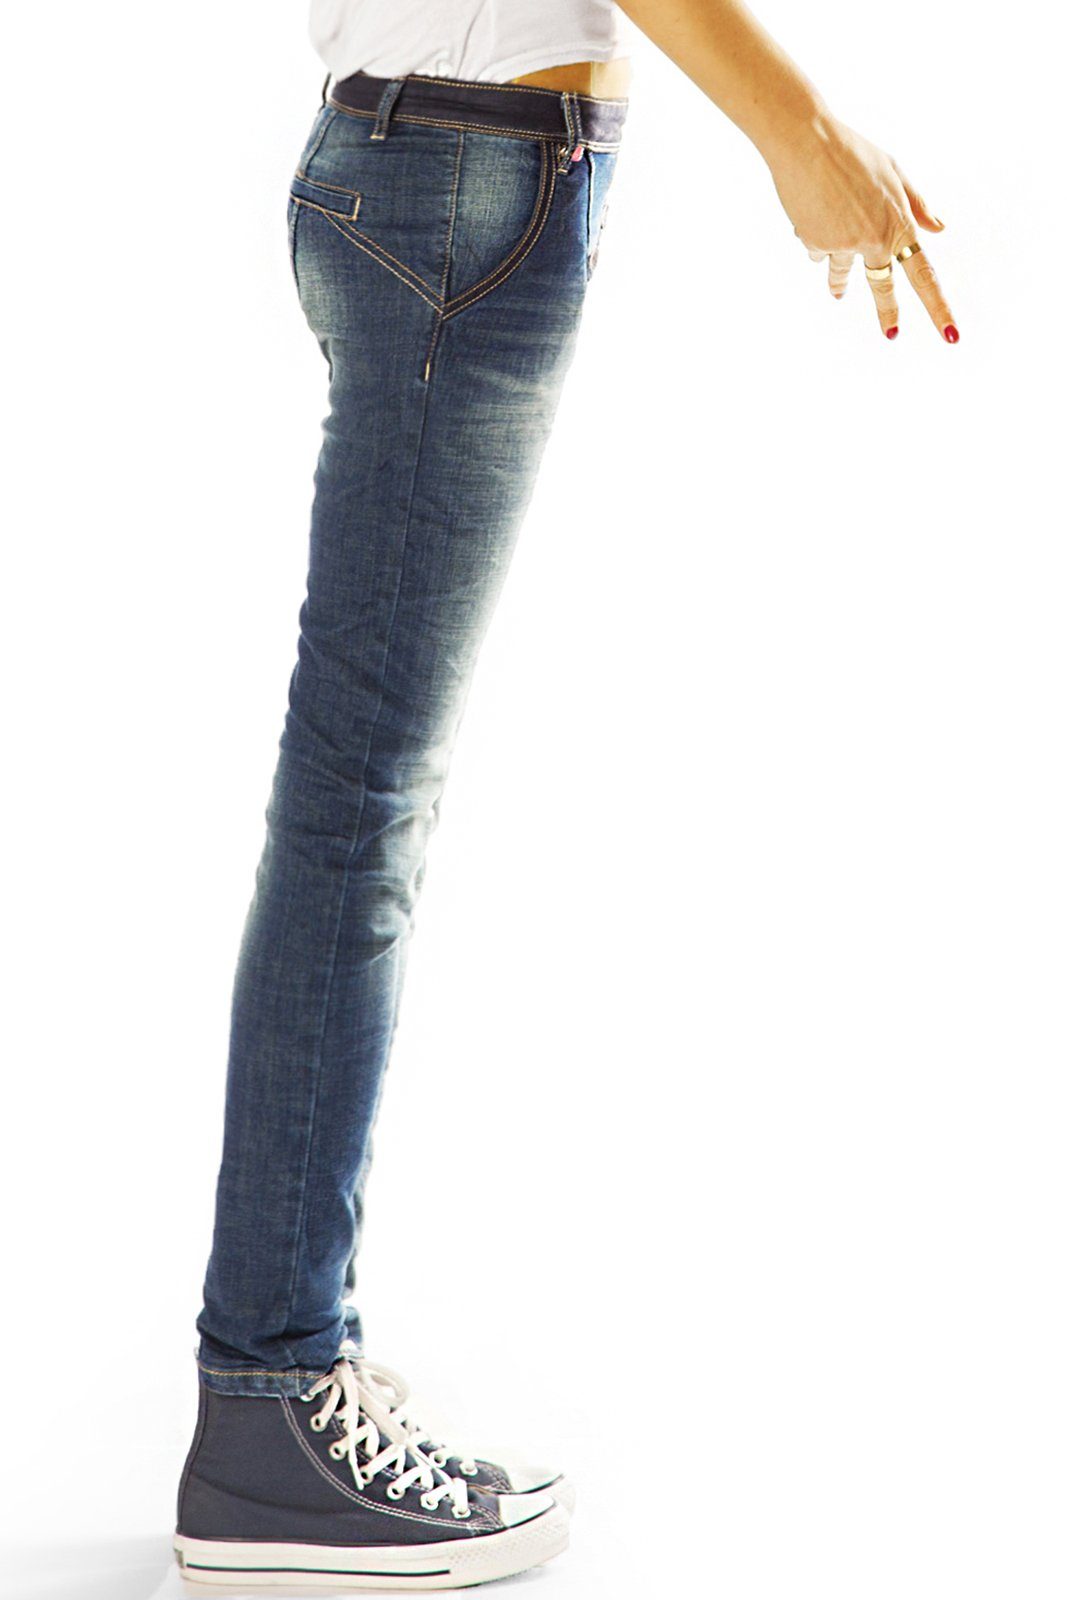 low fit Hüftjeans Slim Damen waist, mit be Knopfleiste, Low-rise-Jeans Stretch-Anteil, styled asymmetrischer hüftig, Ziernähte - schräge mit lange Knopfleiste j15L -